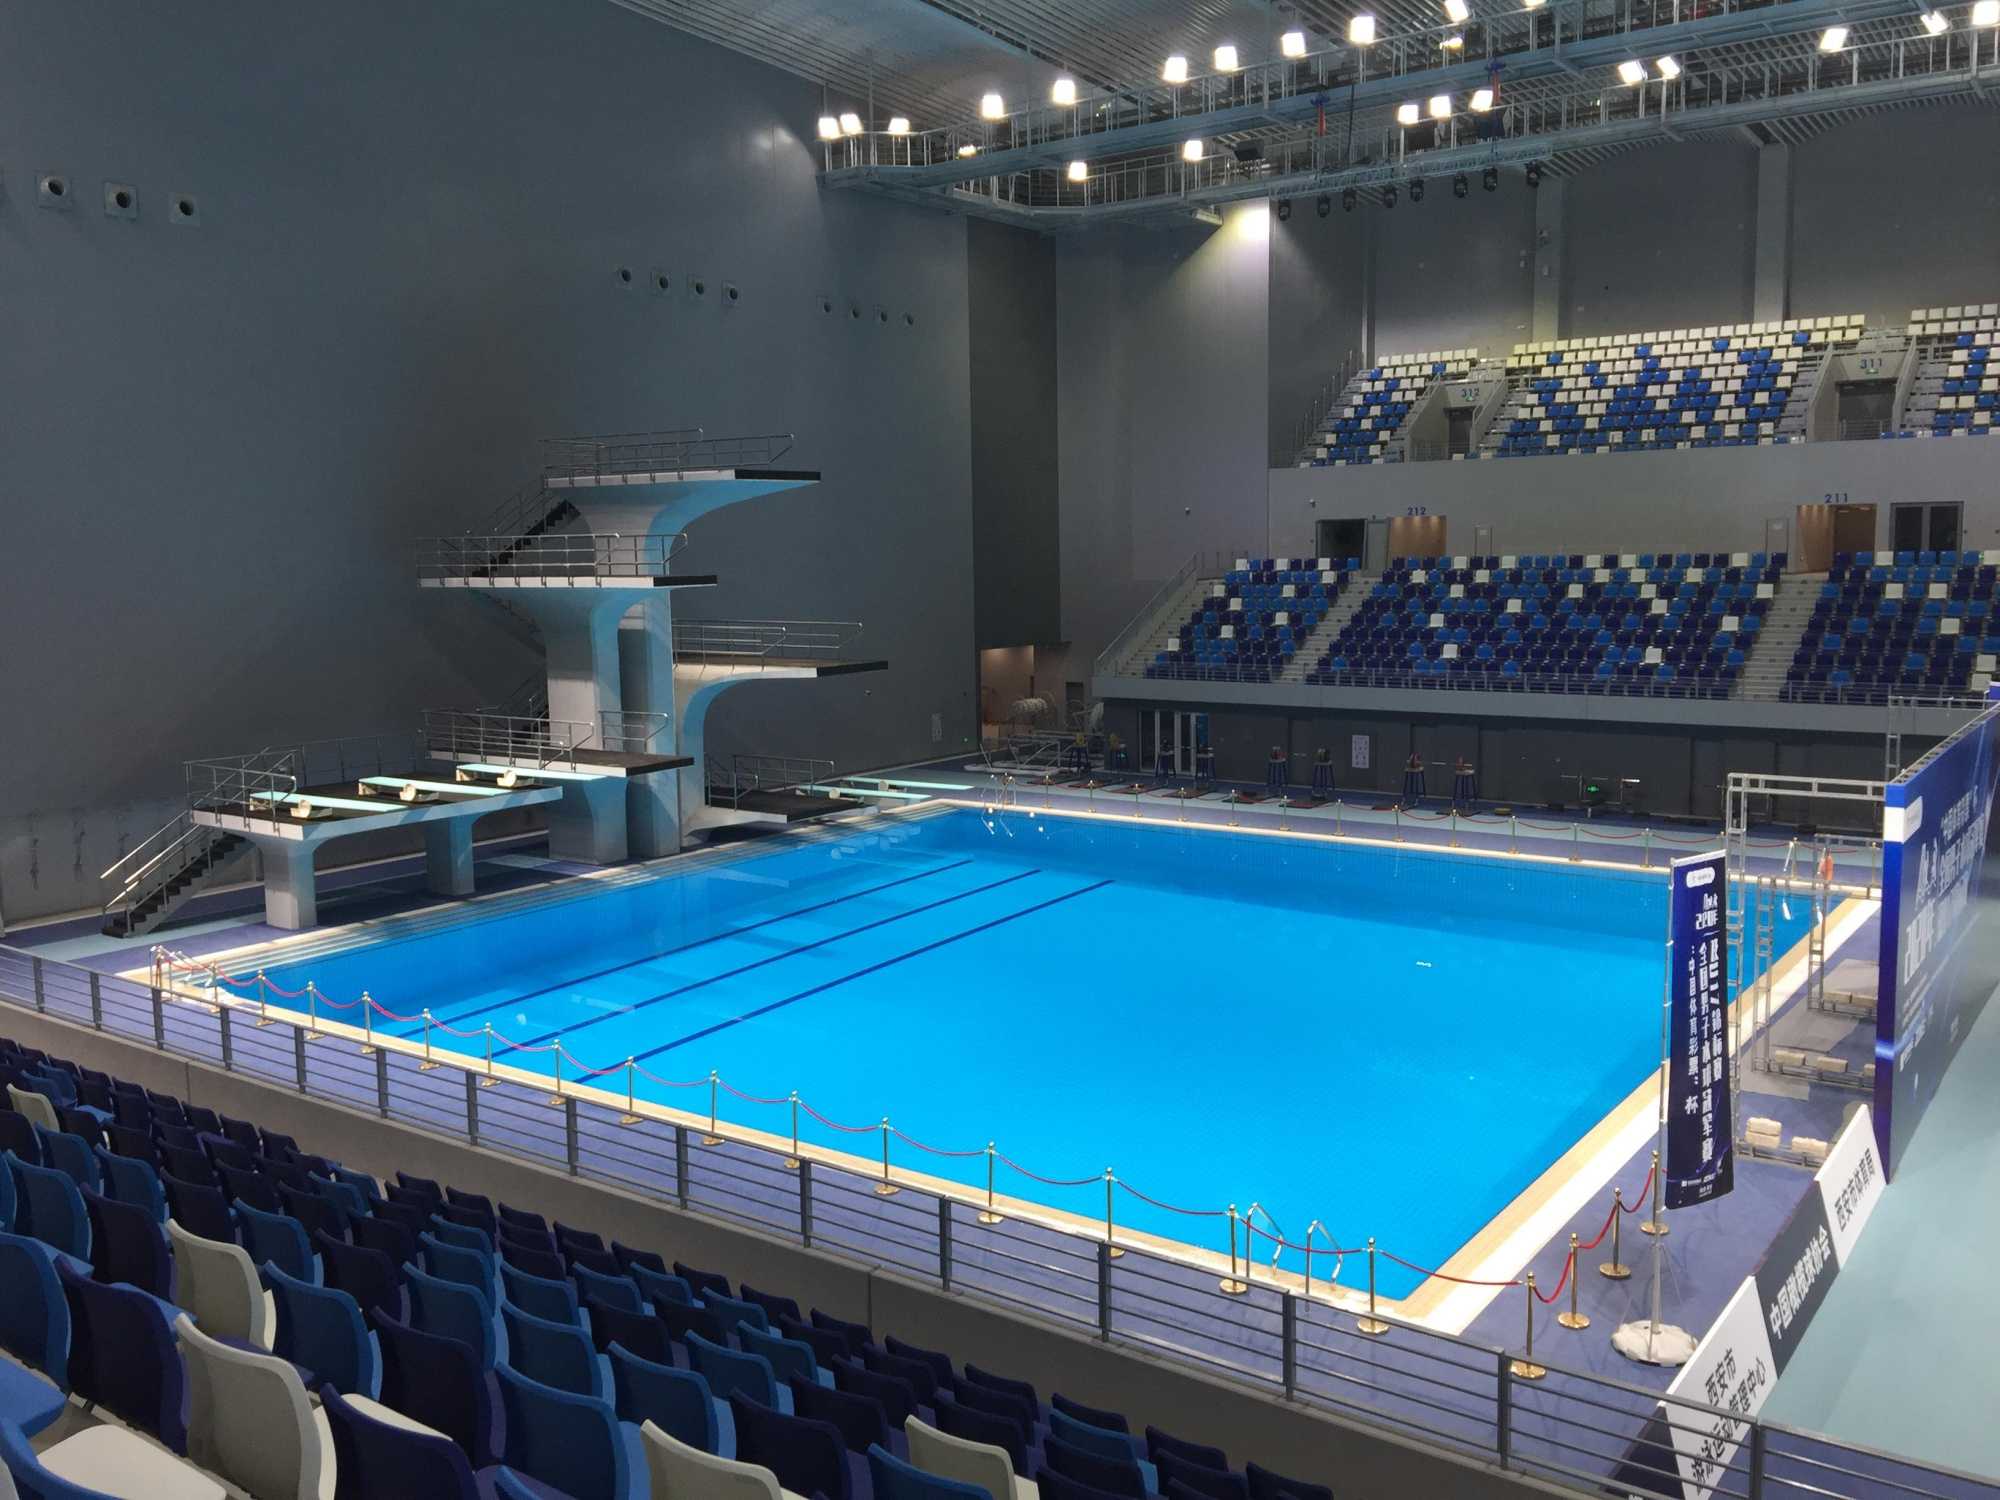 西安奥体游泳馆首迎全国性赛事 既有颜值又有内涵